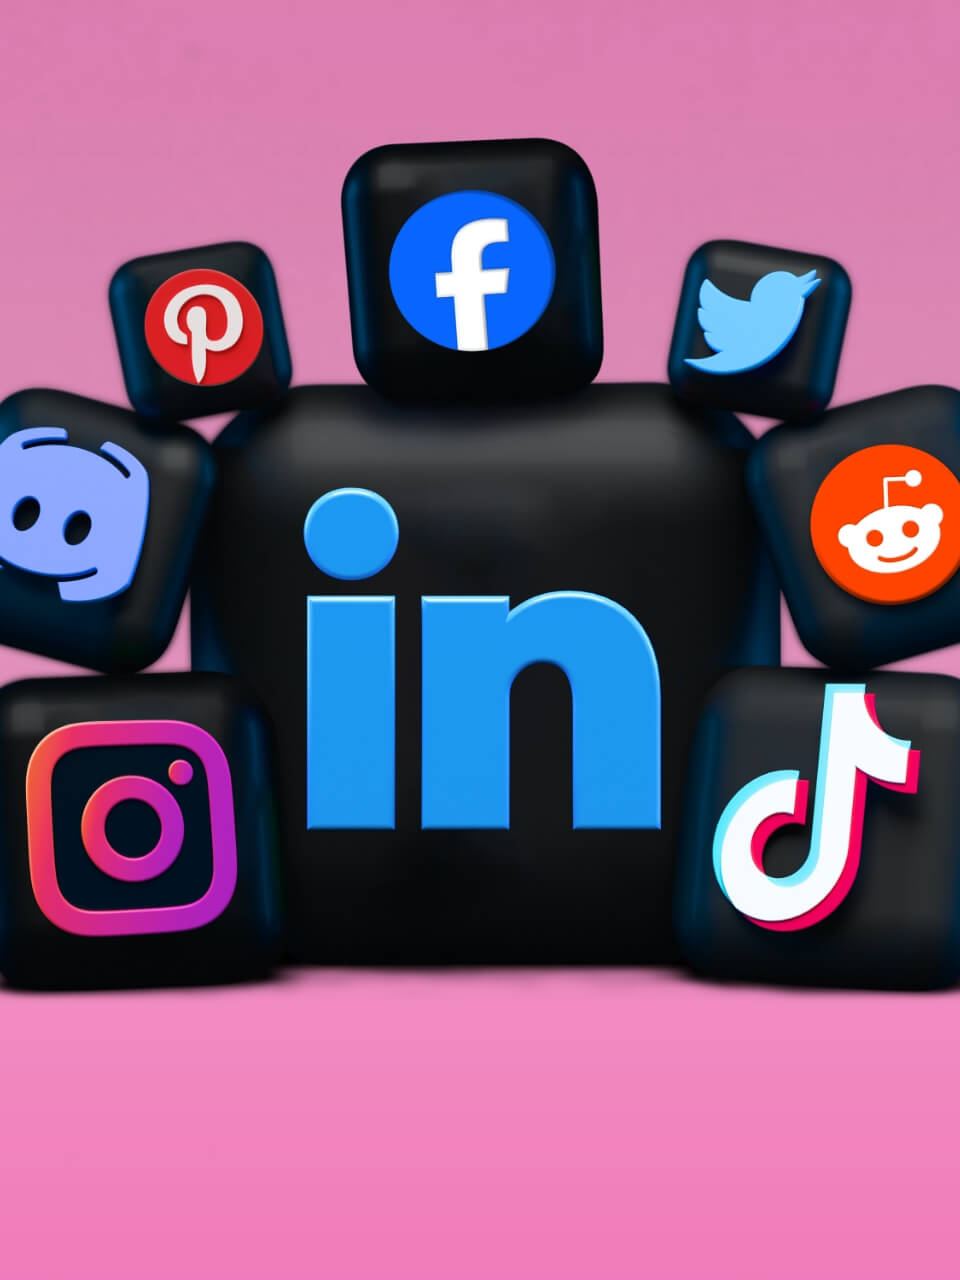 3D-Darstellung verschiedener sozialer Medien-Logos wie LinkedIn, Facebook, Instagram, Twitter, Pinterest, Reddit und TikTok, die wie Würfel auf einem rosa Hintergrund angeordnet sind.